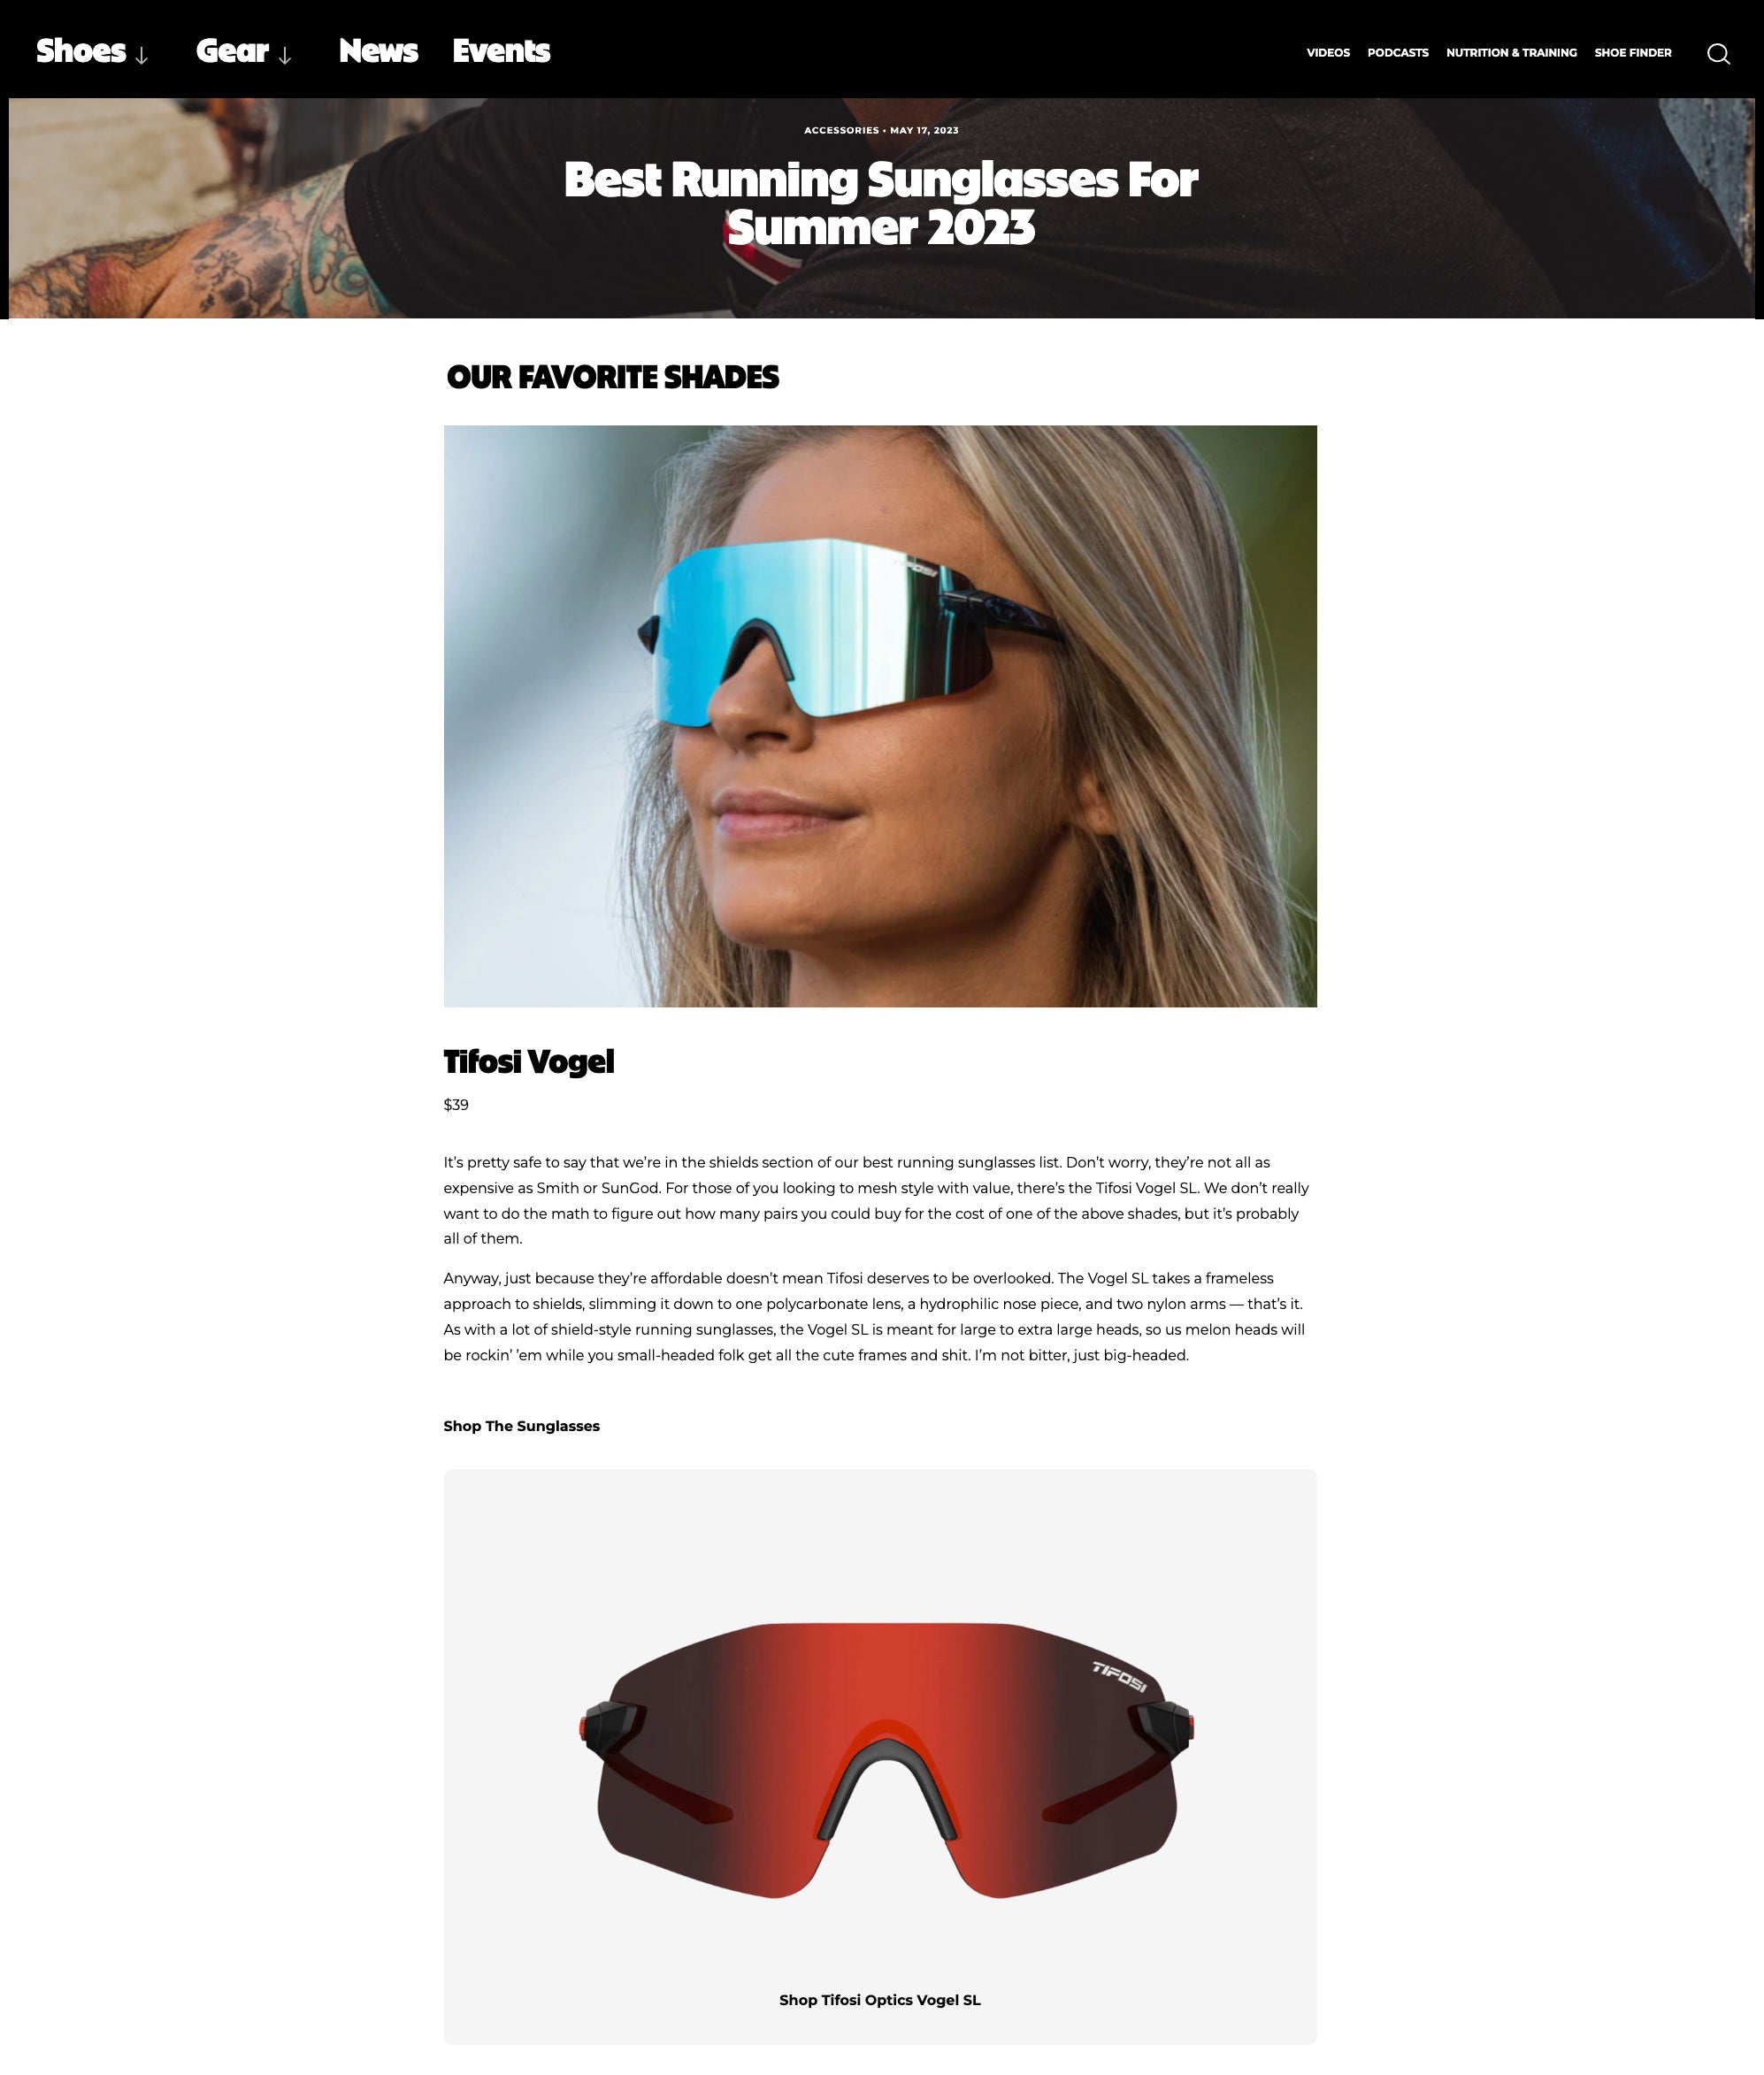 Best Running Sunglasses For Summer 2023 - Vogel SL